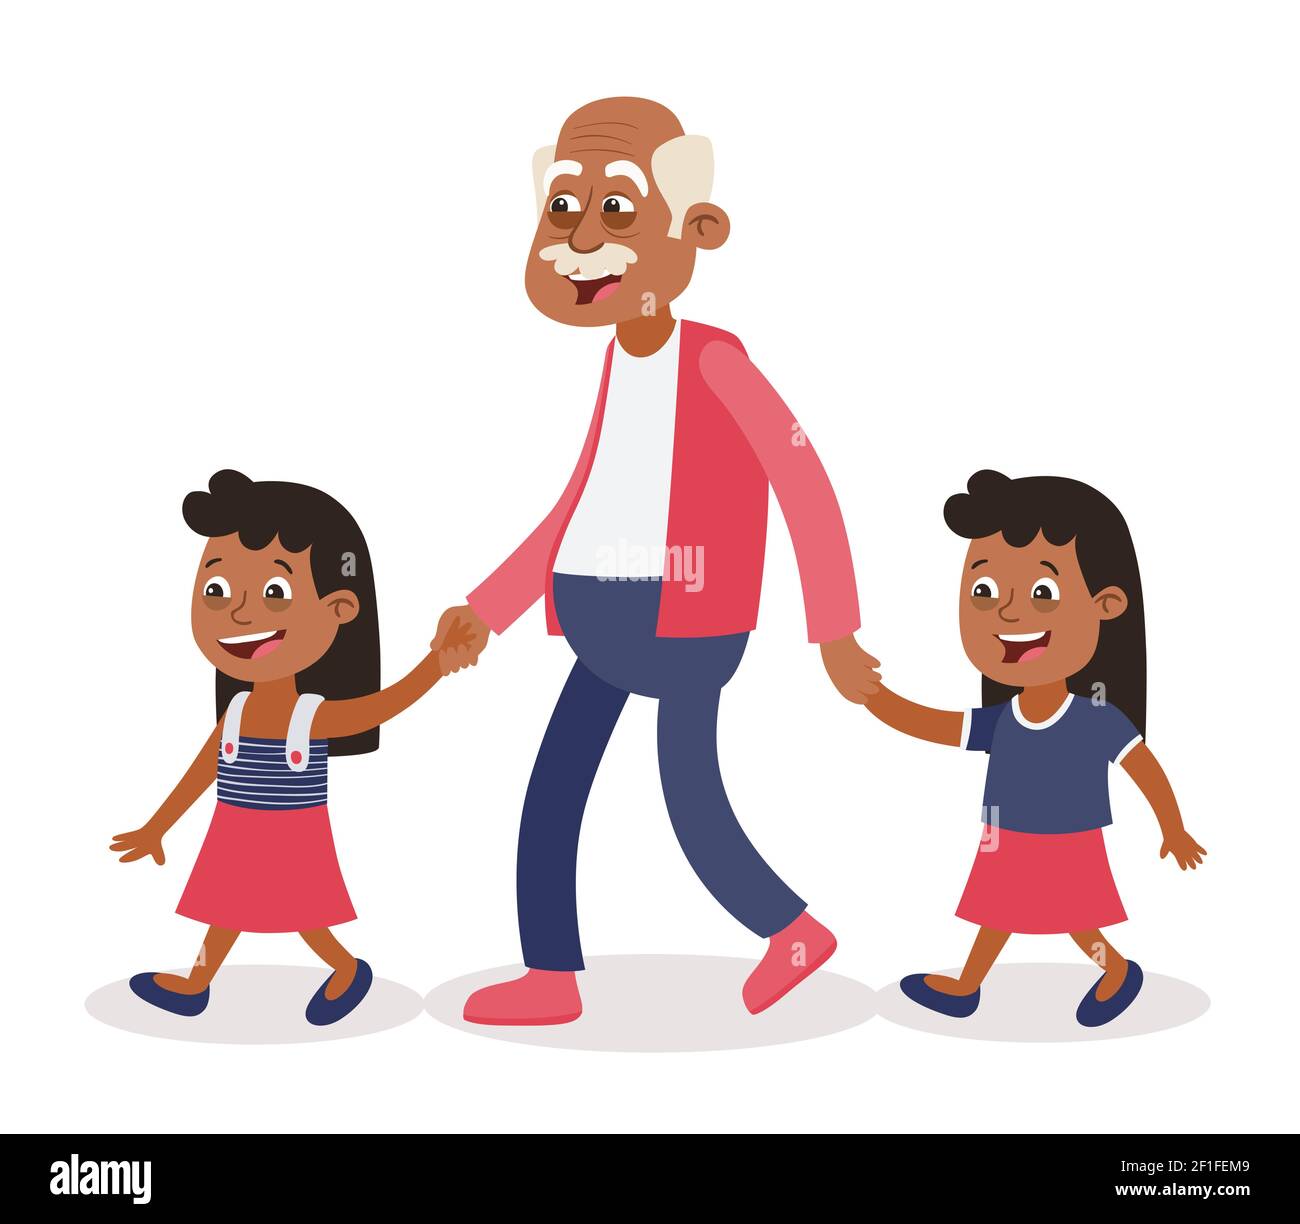 Grand-père avec ses petits-enfants marchant, il les prend par la main.deux filles, tweens. Style de dessin animé, isolé sur fond blanc. Vecteur illustrat Illustration de Vecteur